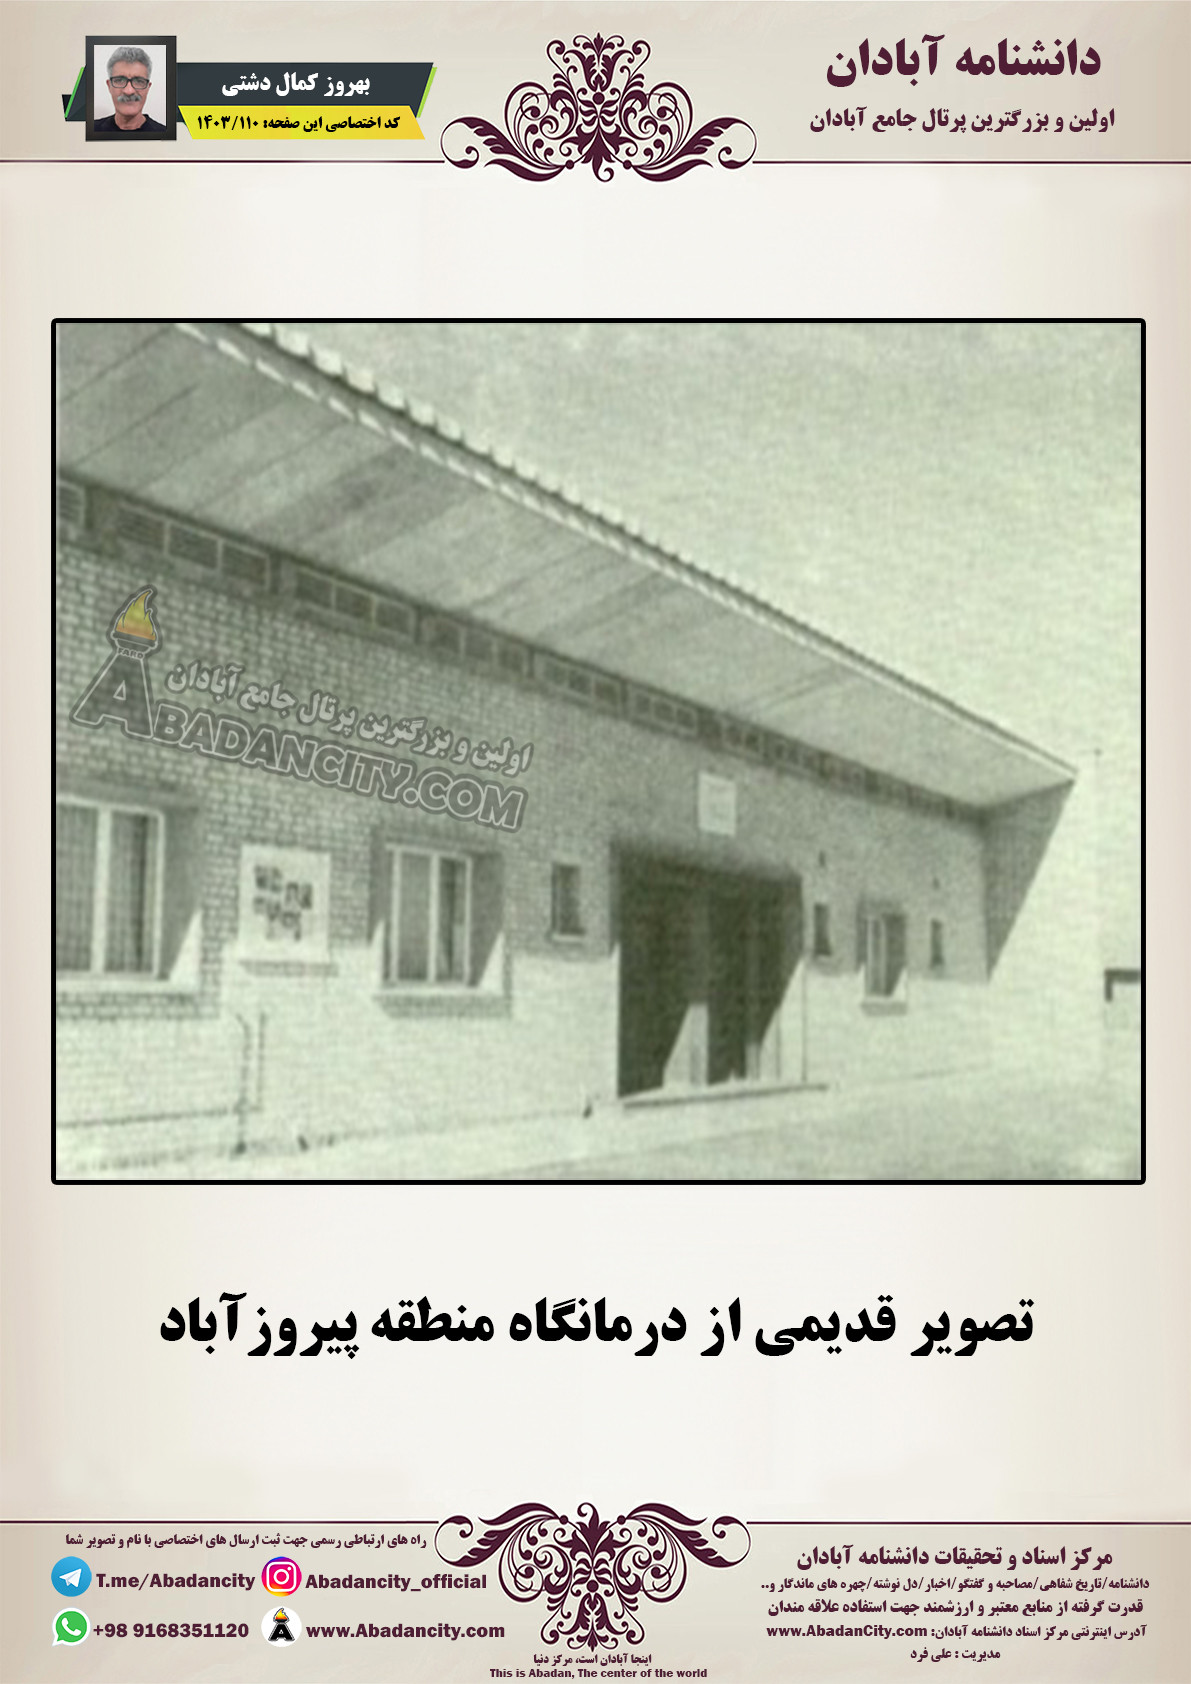 تصویر قدیمی از درمانگاه منطقه پیروزآباد